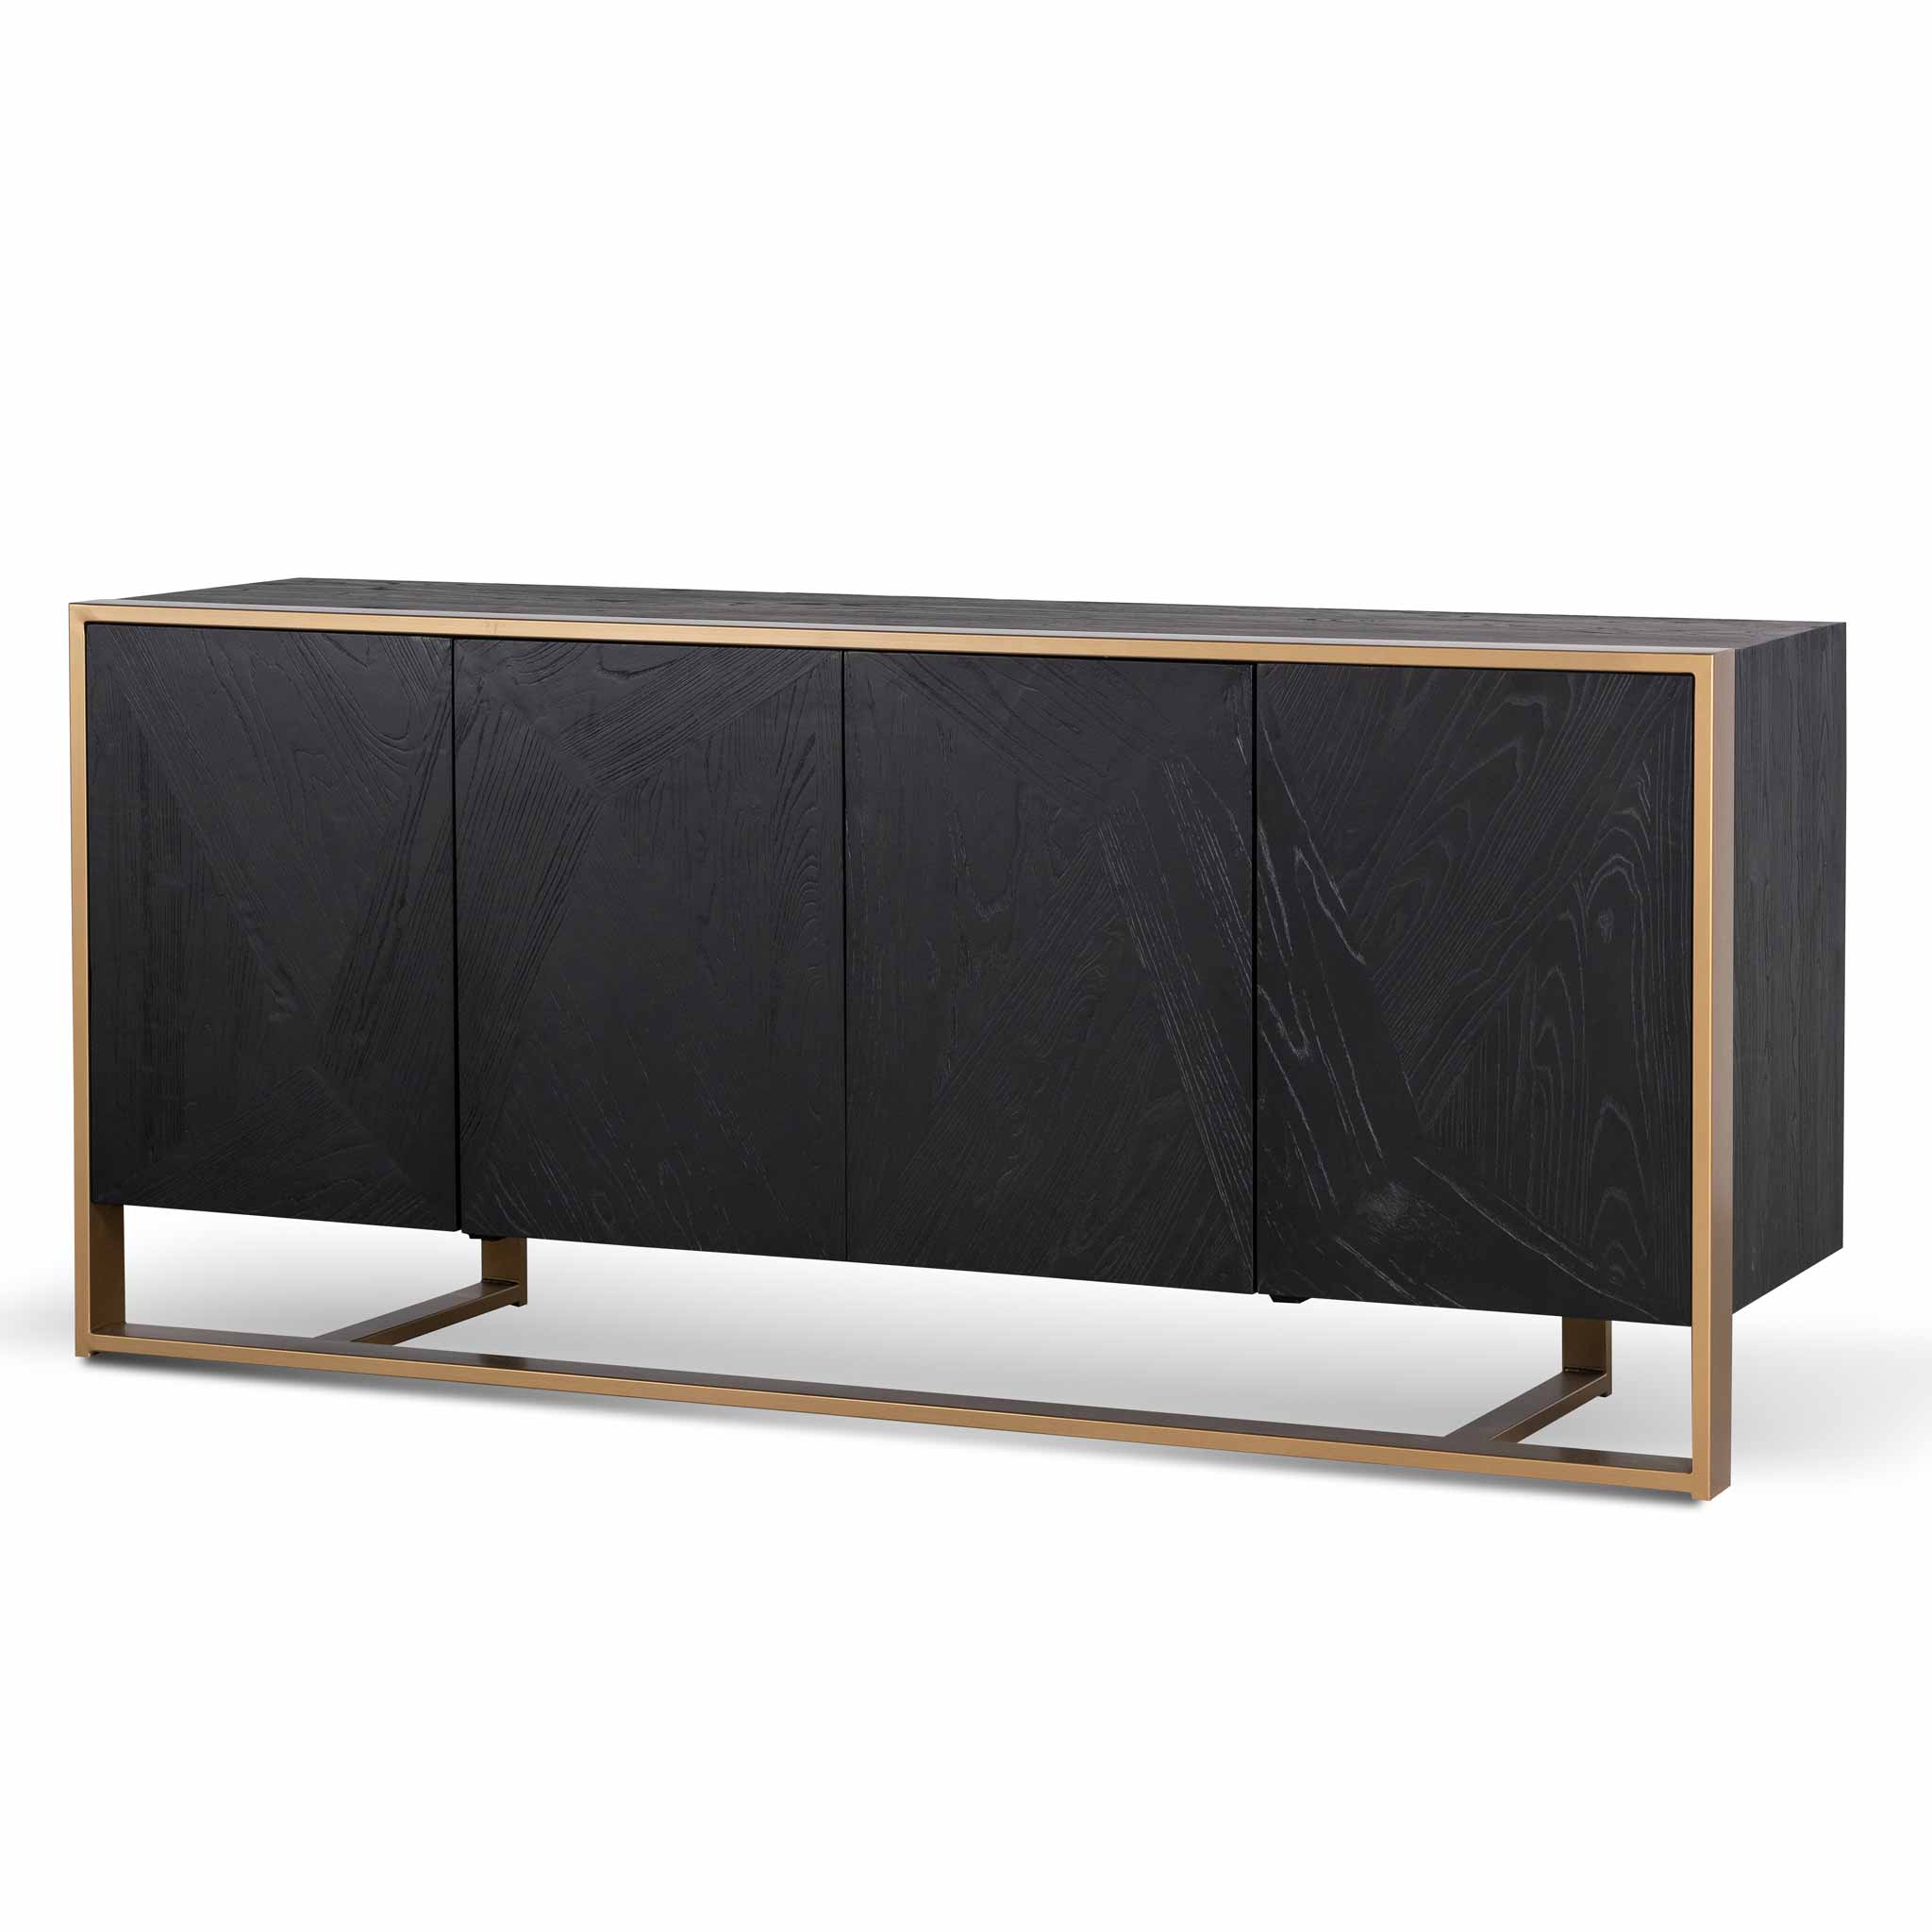 Sophie 186cm Wooden Sideboard - Black with Golden Frame